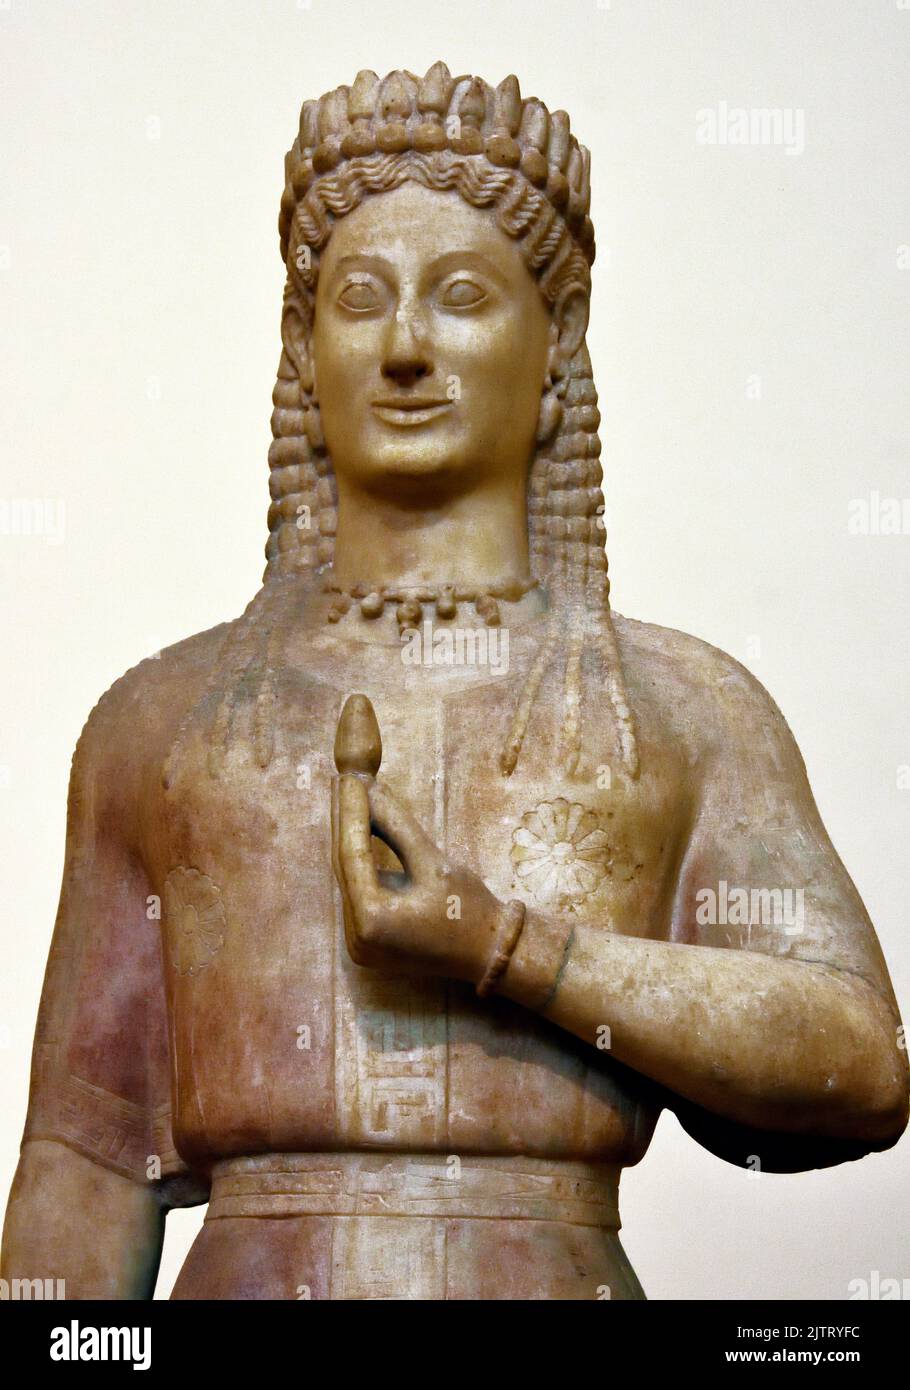 Estatua funeraria de una mujer, conocida como Kore, tumba de Frasikleia en Merenda, antiguo mirrino, período arcaico, 550-540 AC Museo Arqueológico Nacional en Atenas. Foto de stock